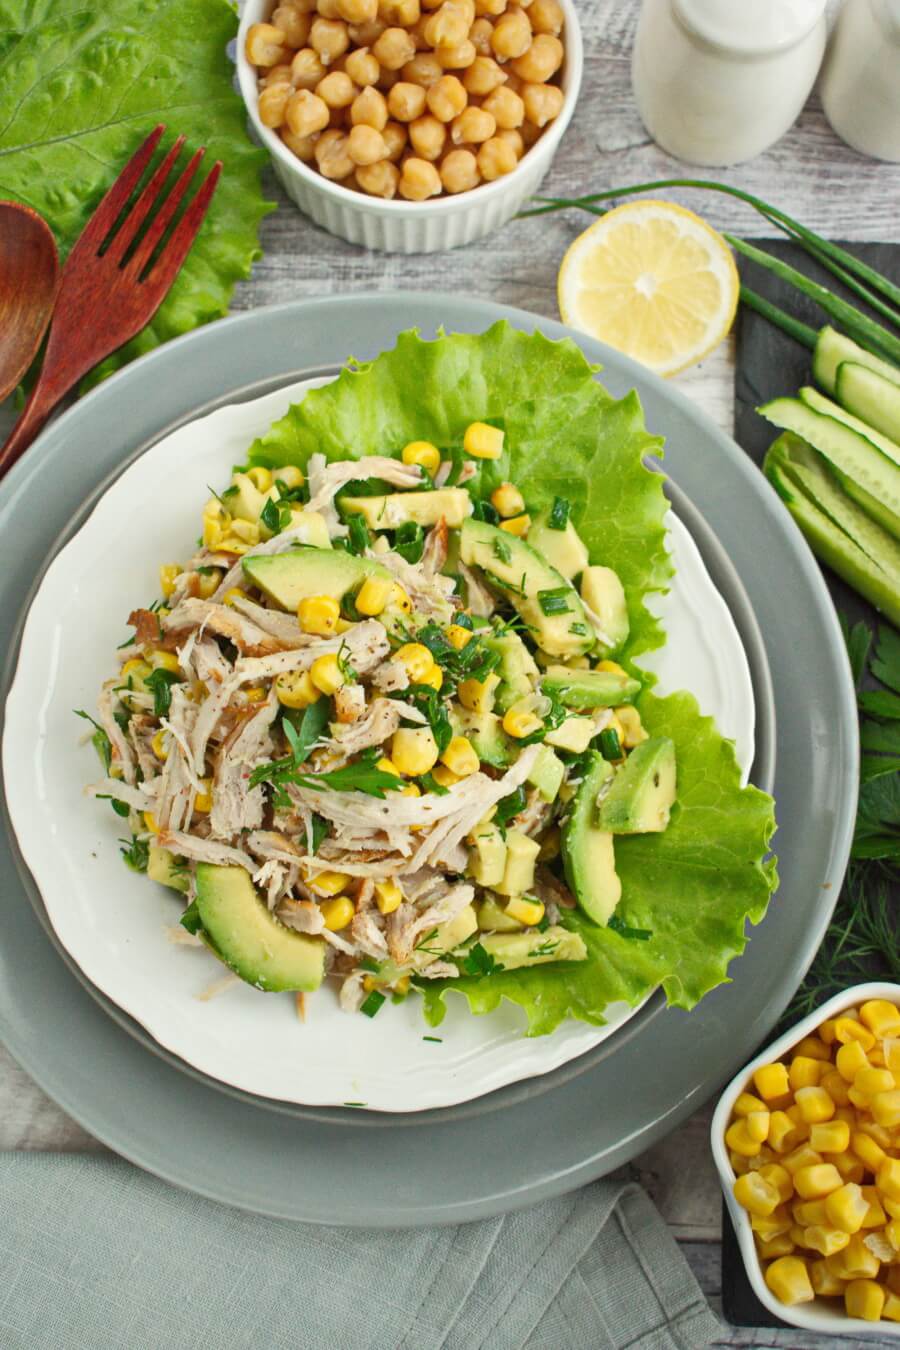 Healthy Avocado Chicken Salad Recipe - Cook.me Recipes